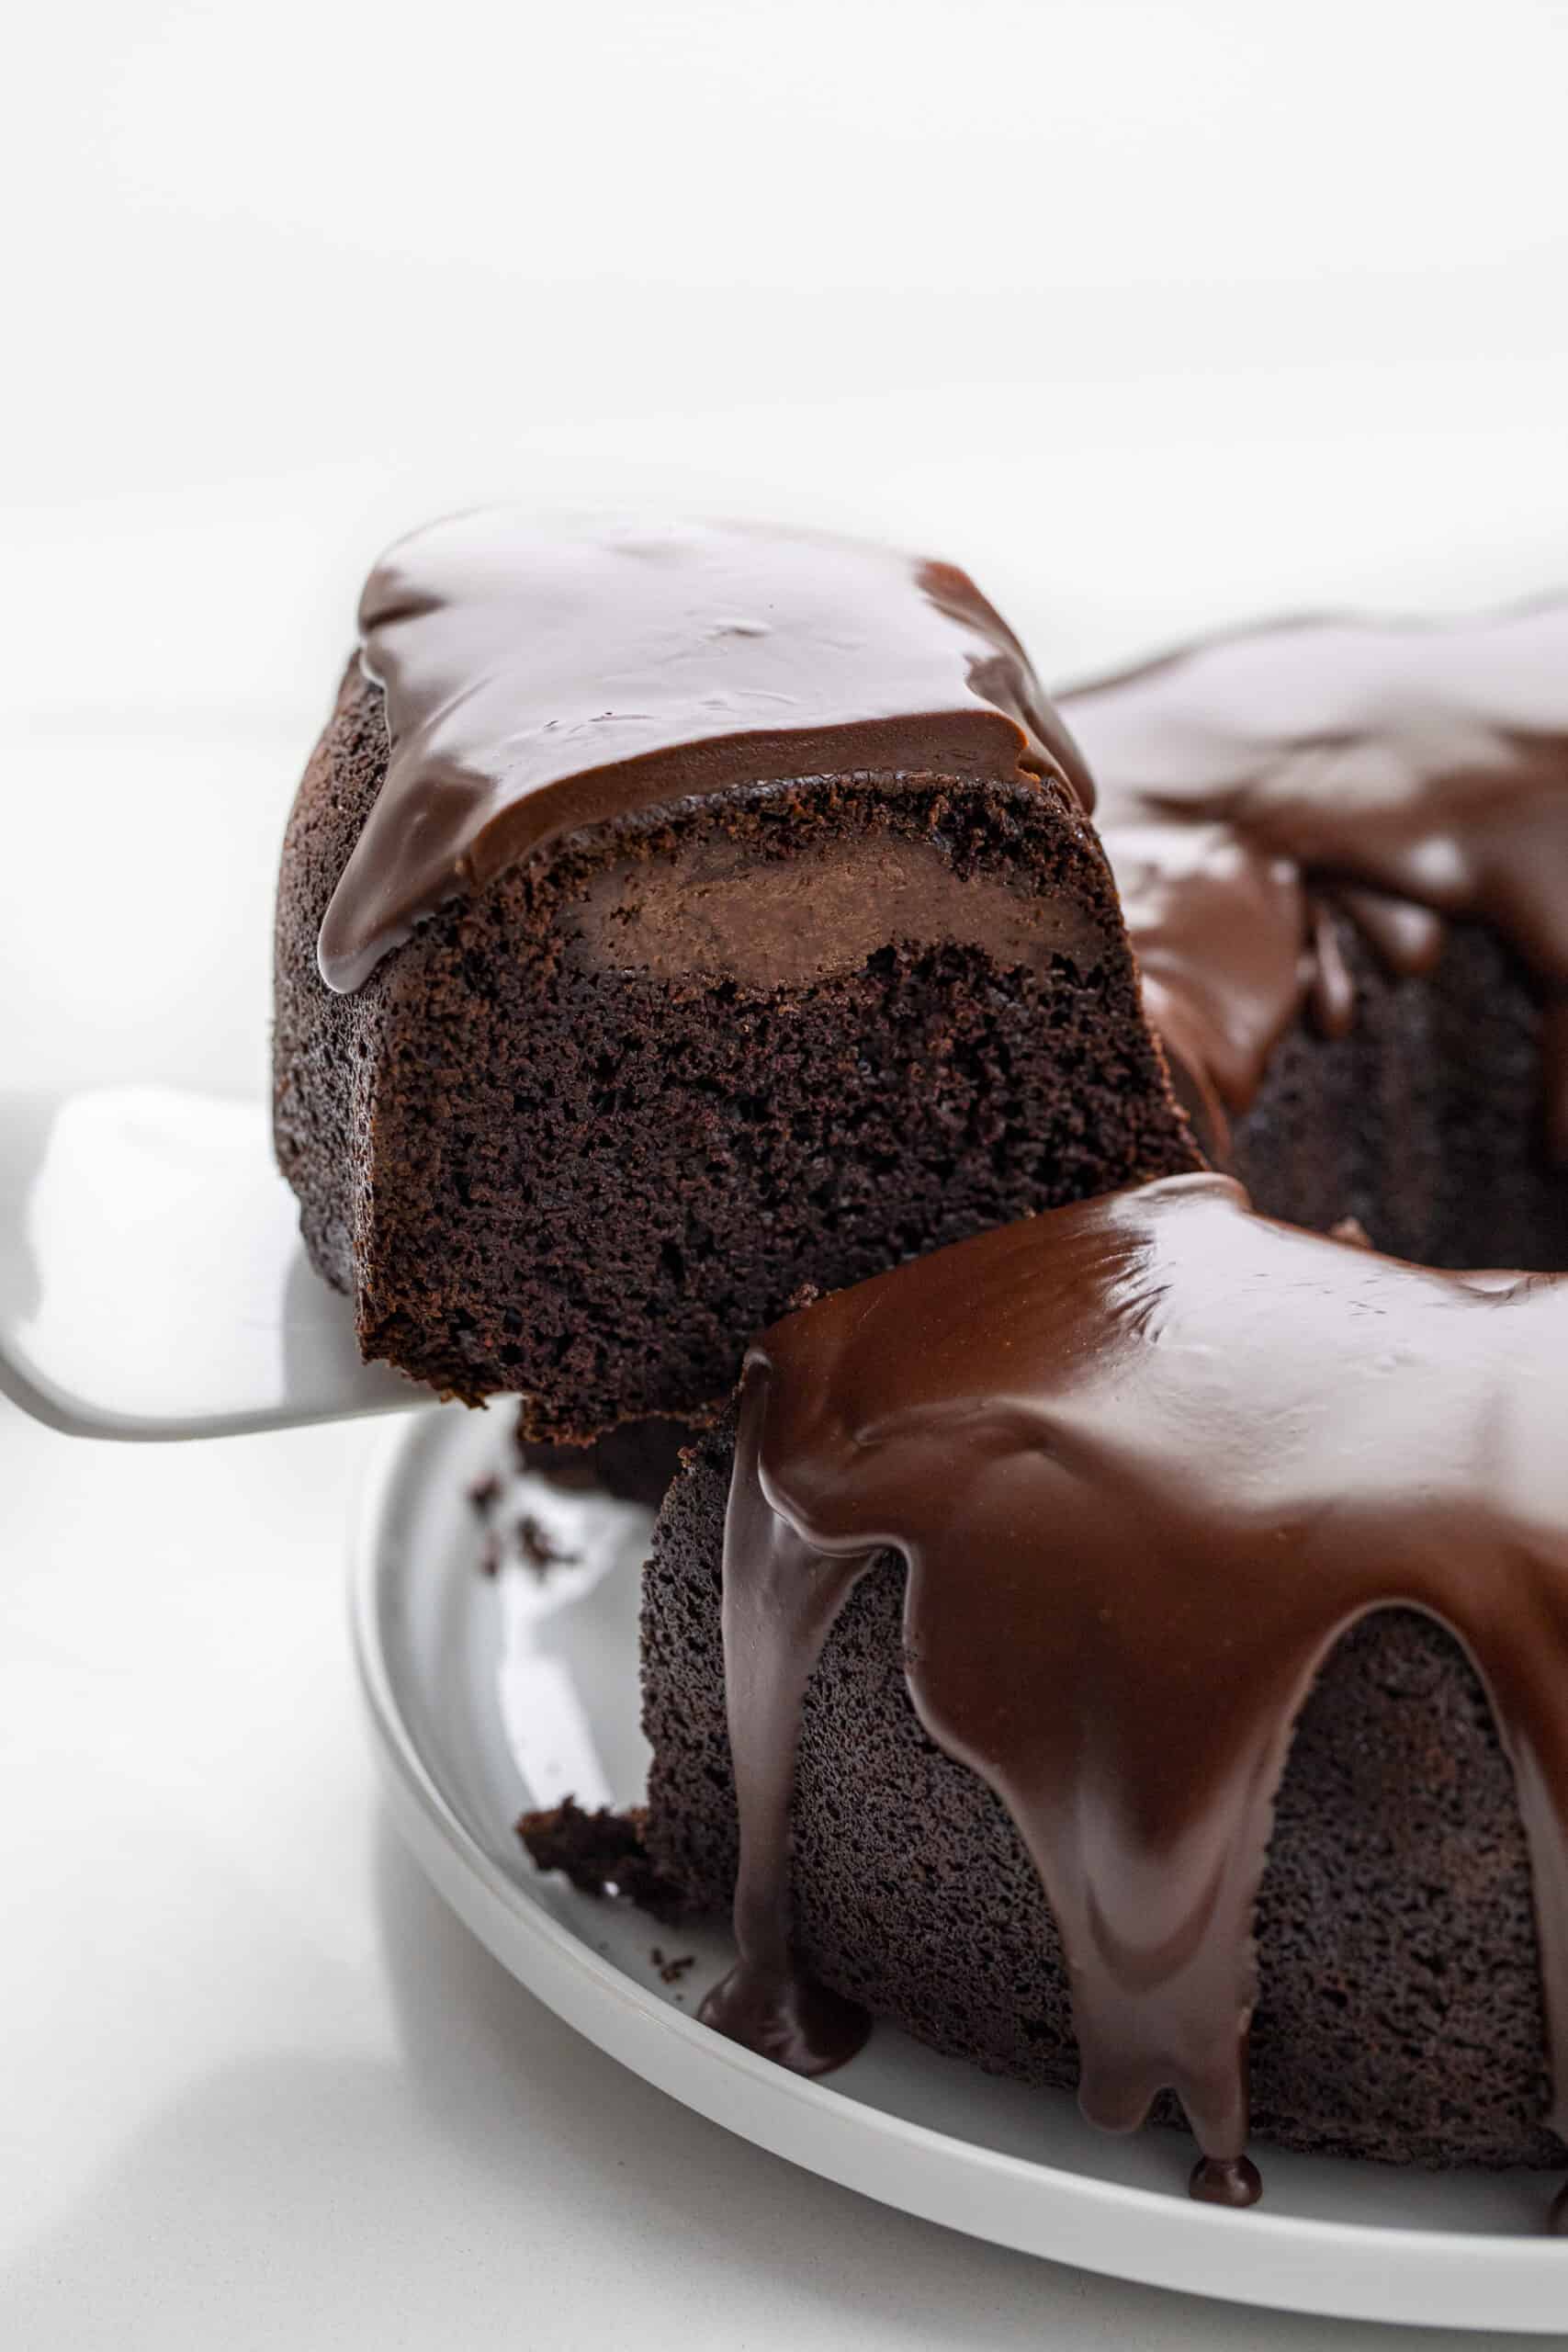 拿起一块巧克力蛋糕